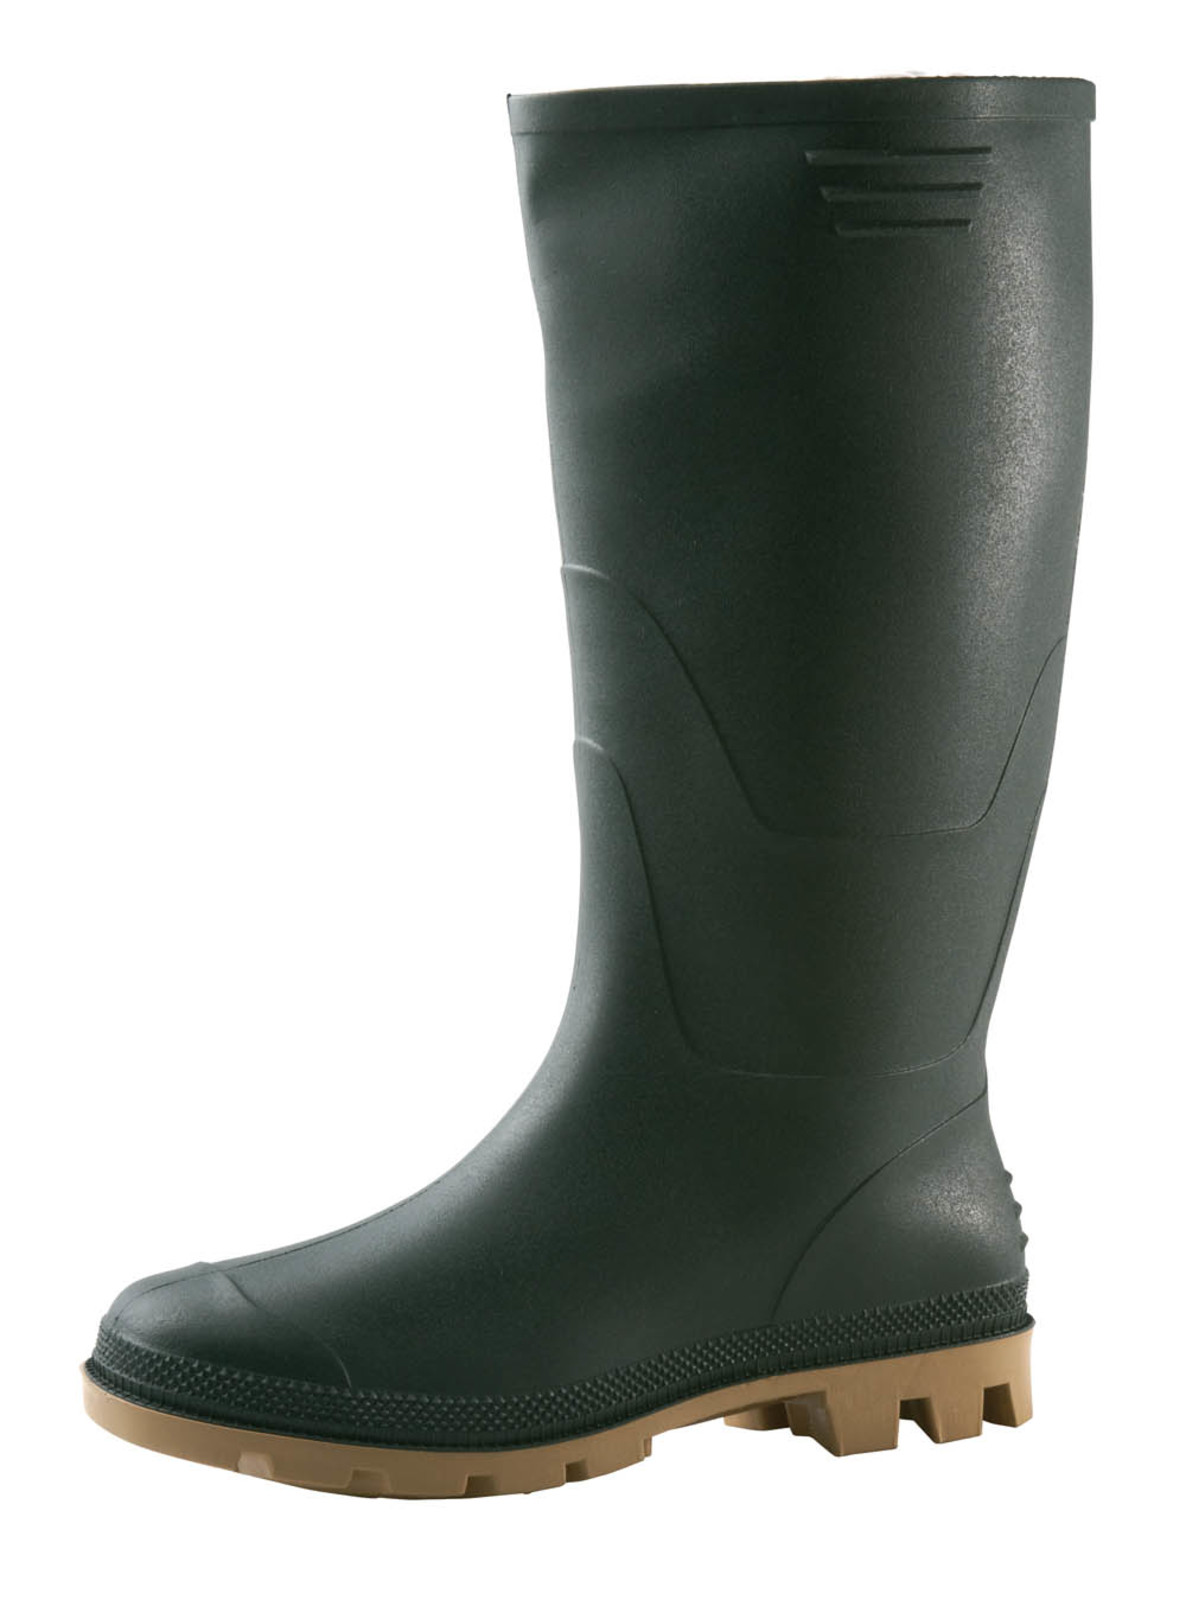 Gumáky Boots Ginocchio PVC - veľkosť: 46, farba: zelená